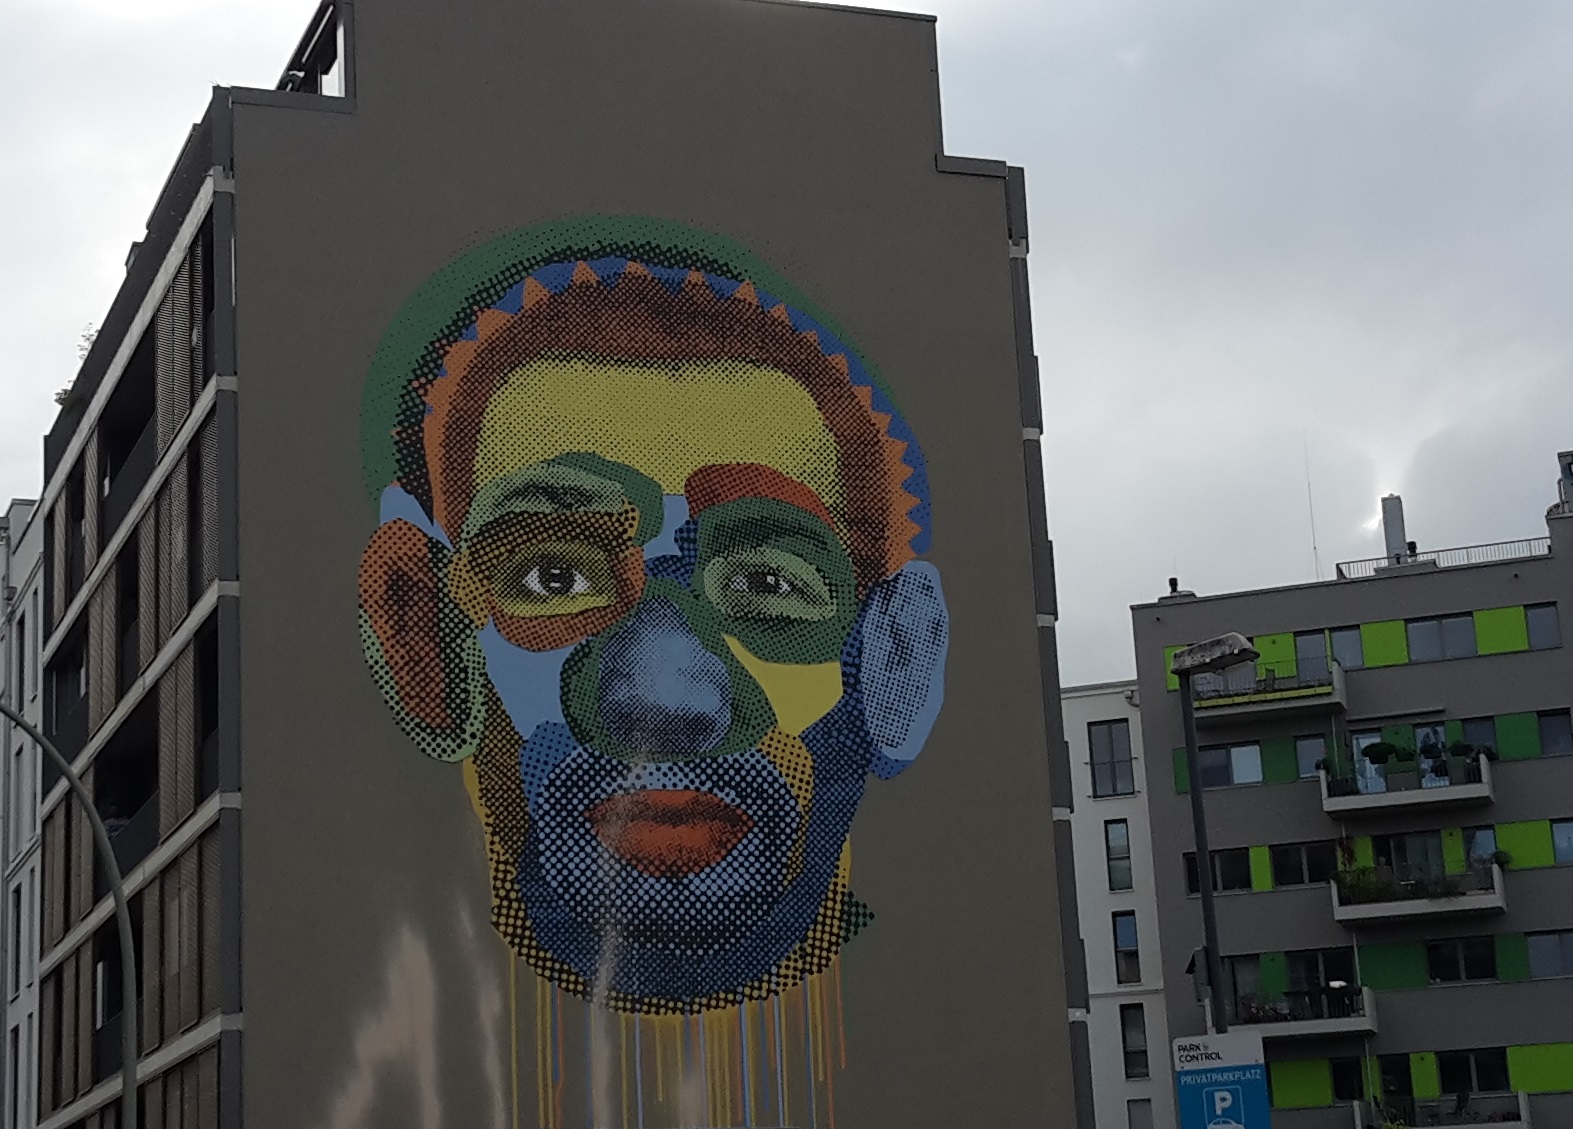 Gesicht Streetart Face Time Kreuzberg